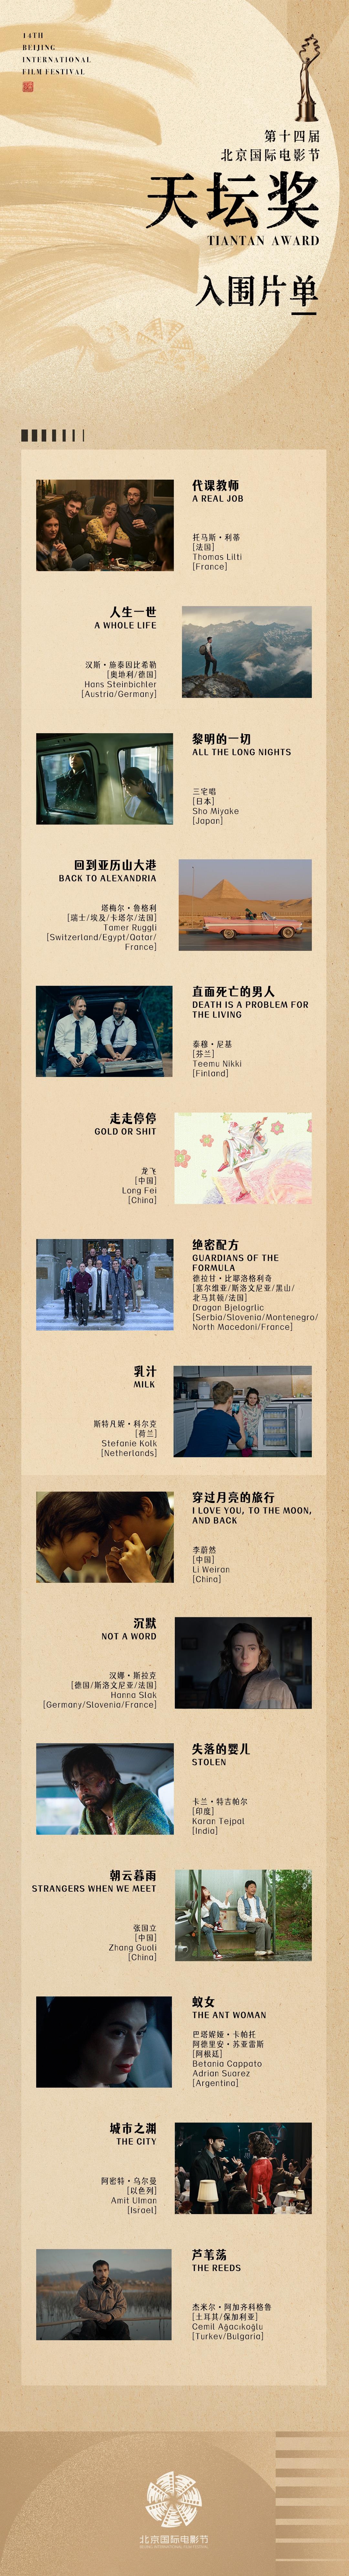 Finaliste du Prix Tiantan au 14e Festival international du film de Pékin (BJIFF) Photo : Avec l’aimable autorisation du comité d’organisation du BJIFF